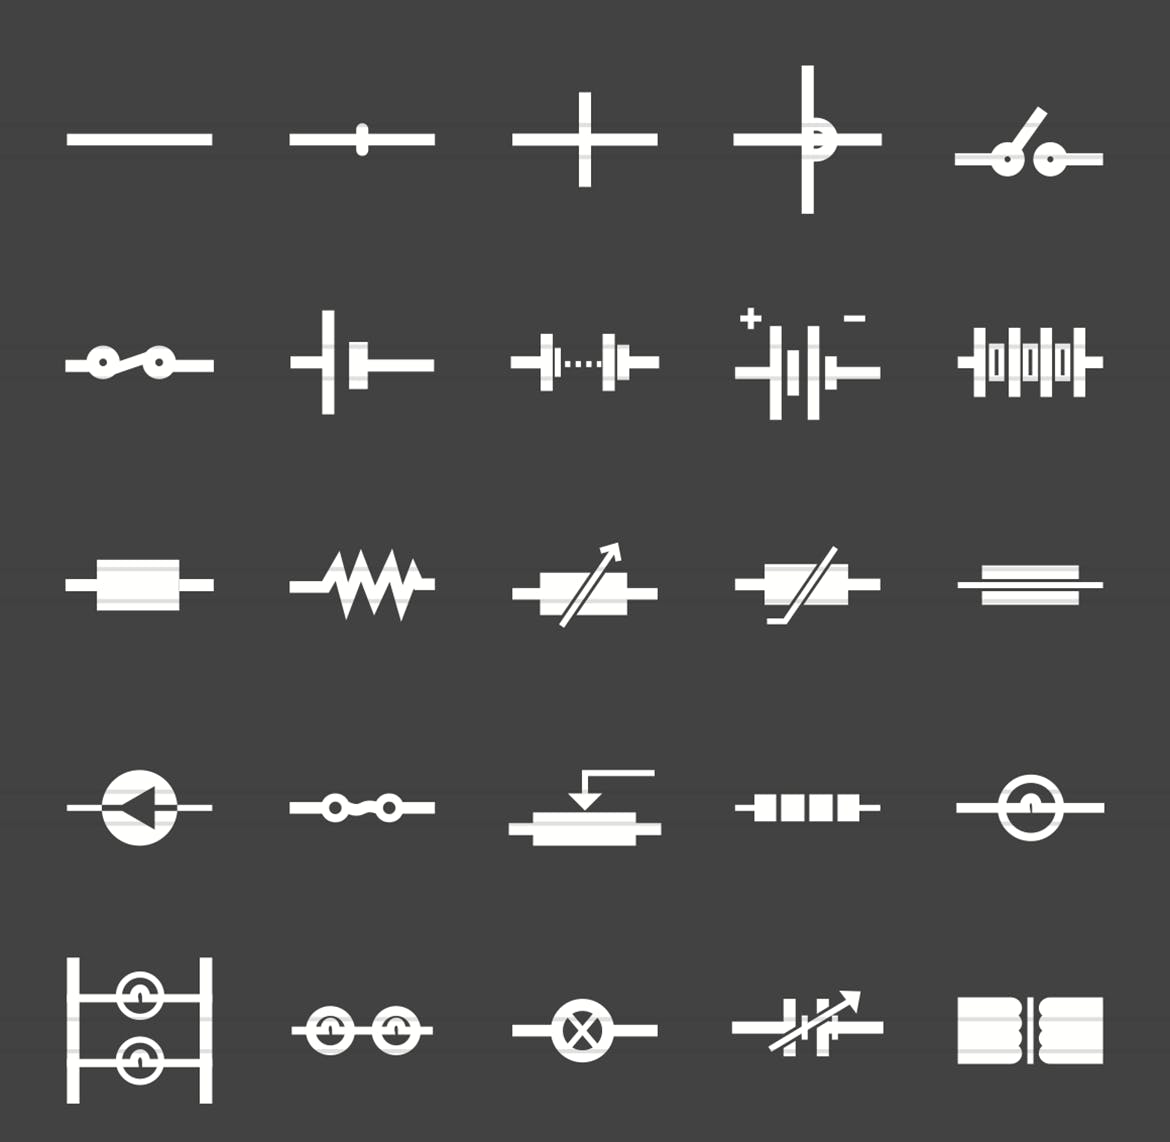 50枚电路线路板主题反转色字体16设计素材网精选图标 50 Electric Circuits Glyph Inverted Icons插图(1)